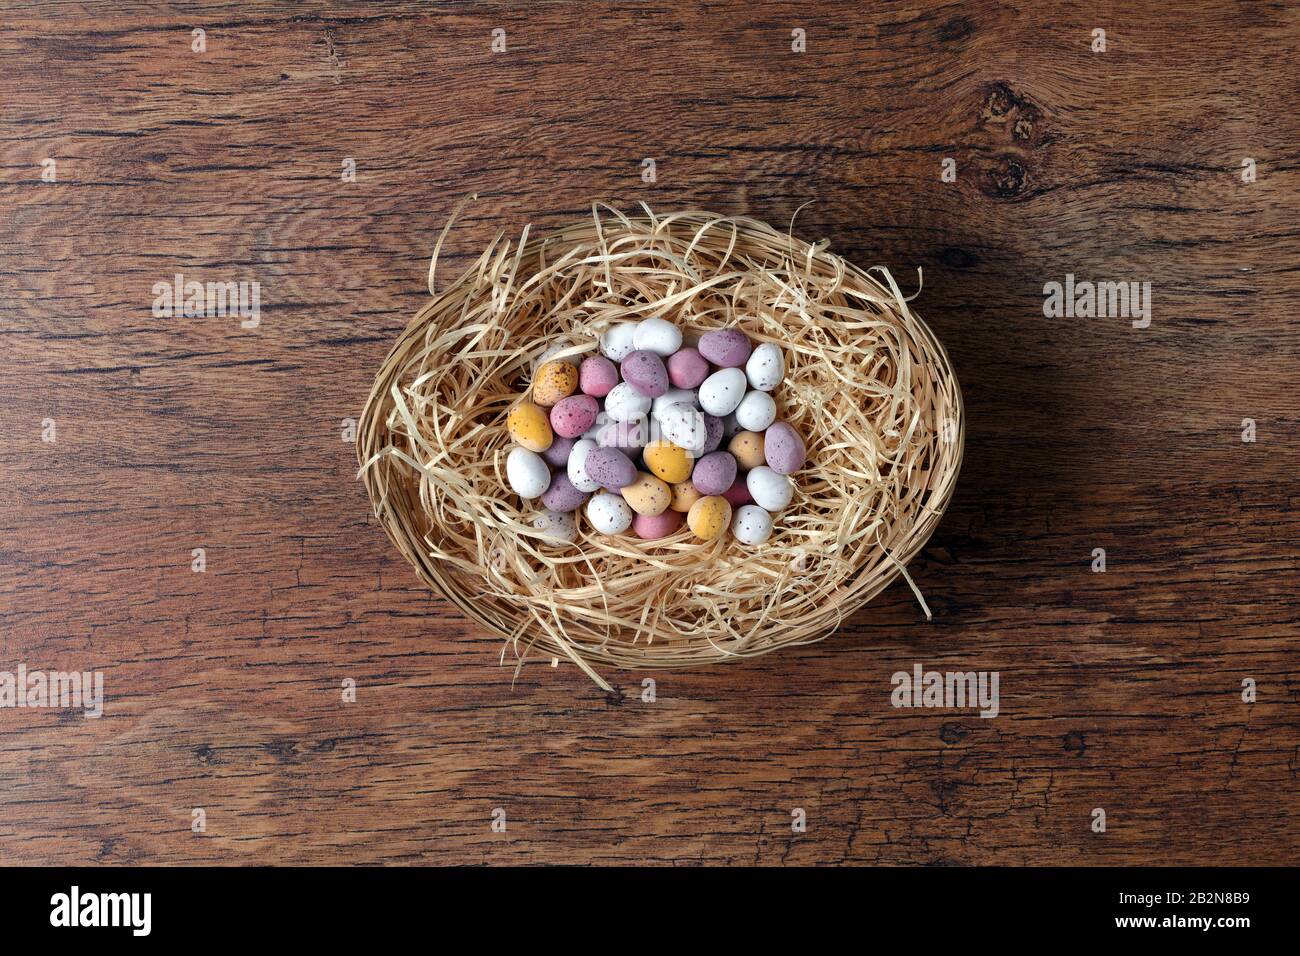 Groupe d'œufs de Pâques dans un panier avec un vieux fond en bois Banque D'Images